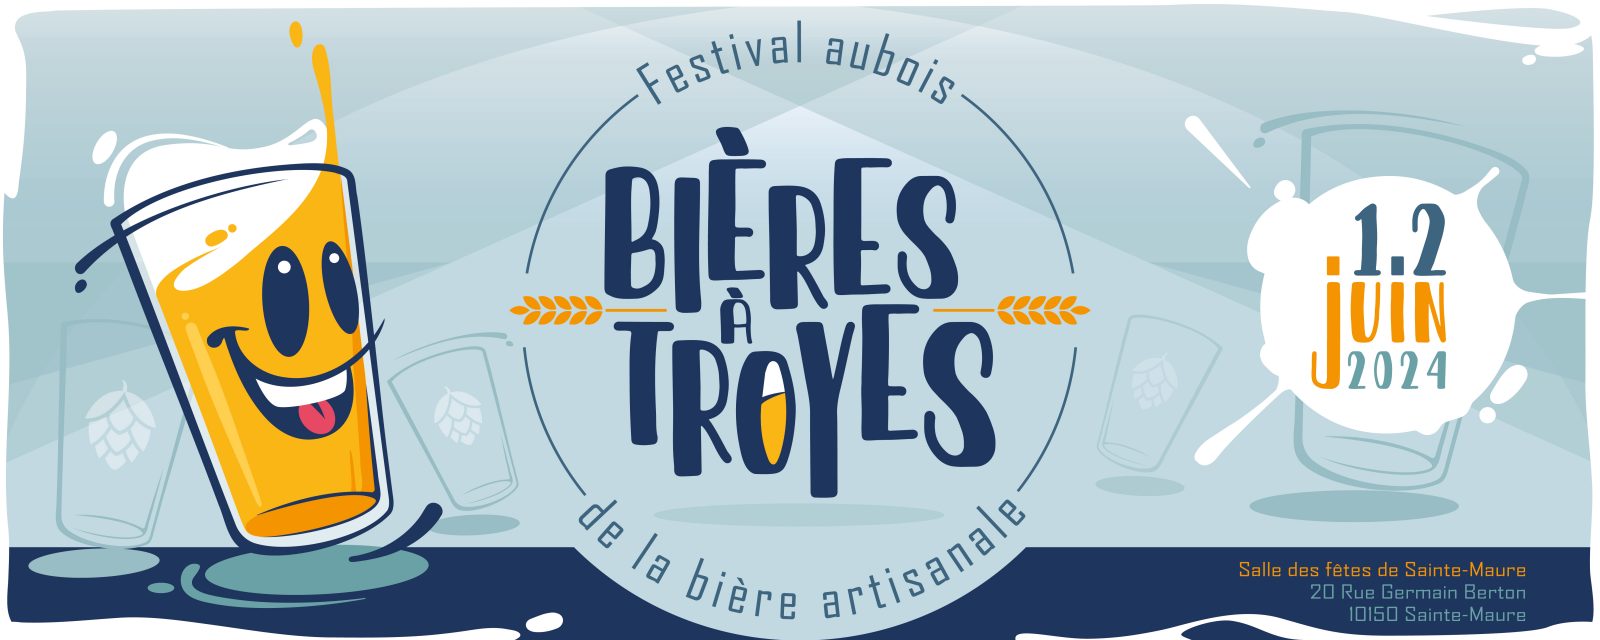 "BIÈRES À TROYES" - FESTIVAL AUBOIS DE LA BIÈRE... Du 1 au 2 juin 2024